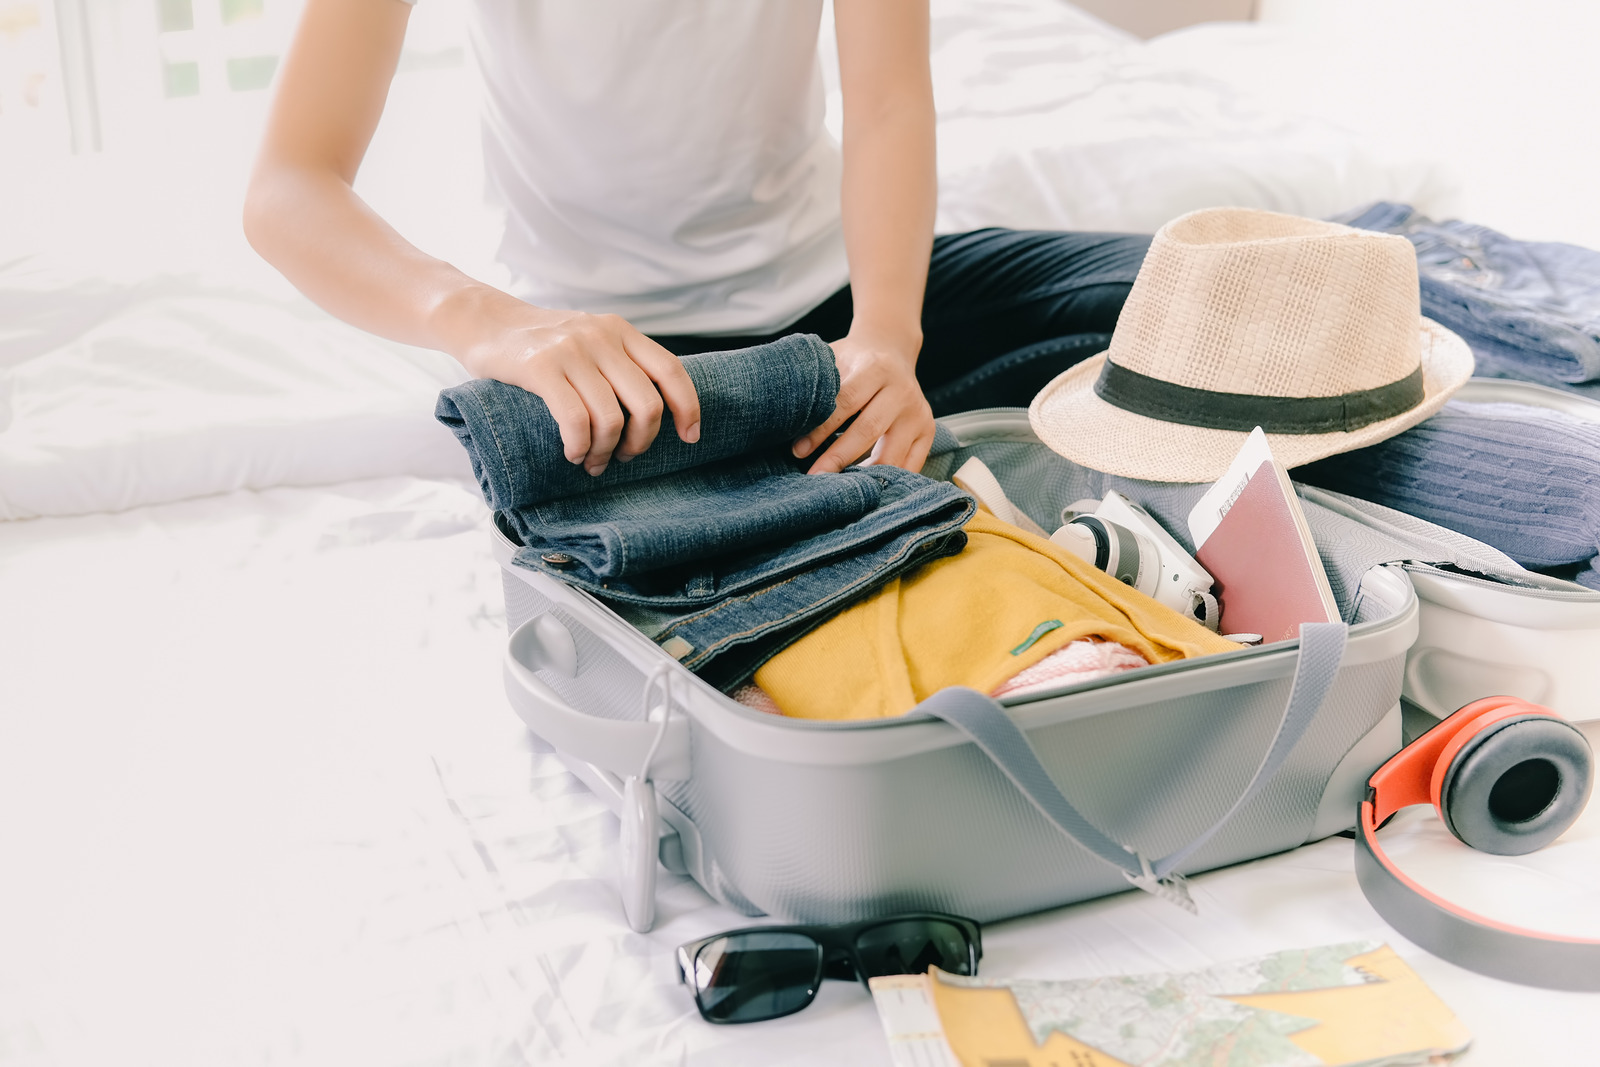 Hành lý cần được chuẩn bị phù hợp với tính chất của chuyến đi